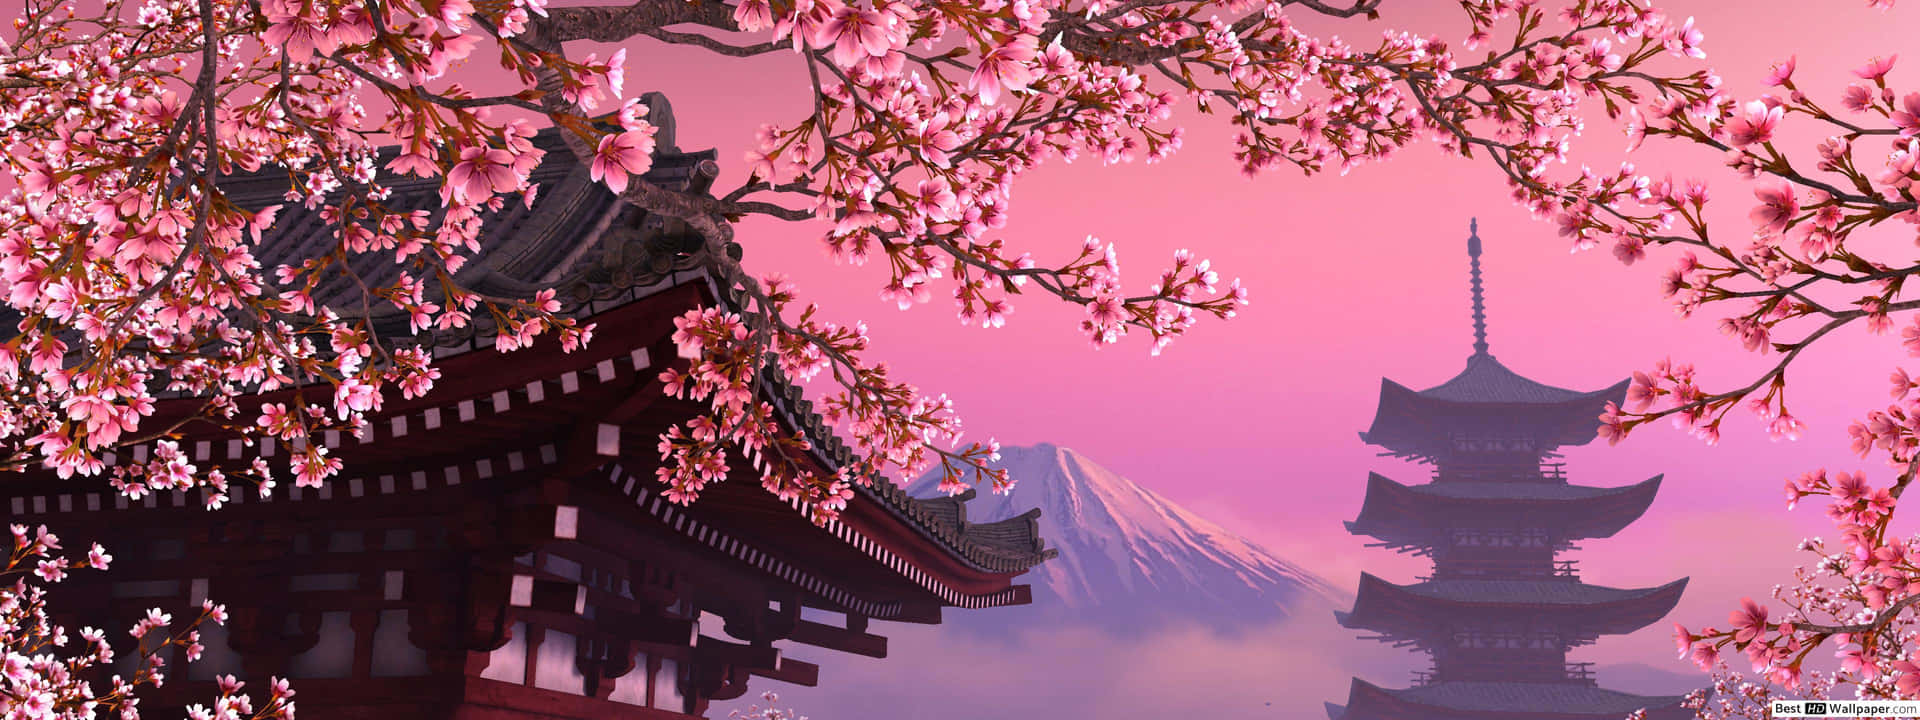 Unhermoso Árbol De Cerezo De Color Rosa Oscuro En Plena Floración. Fondo de pantalla